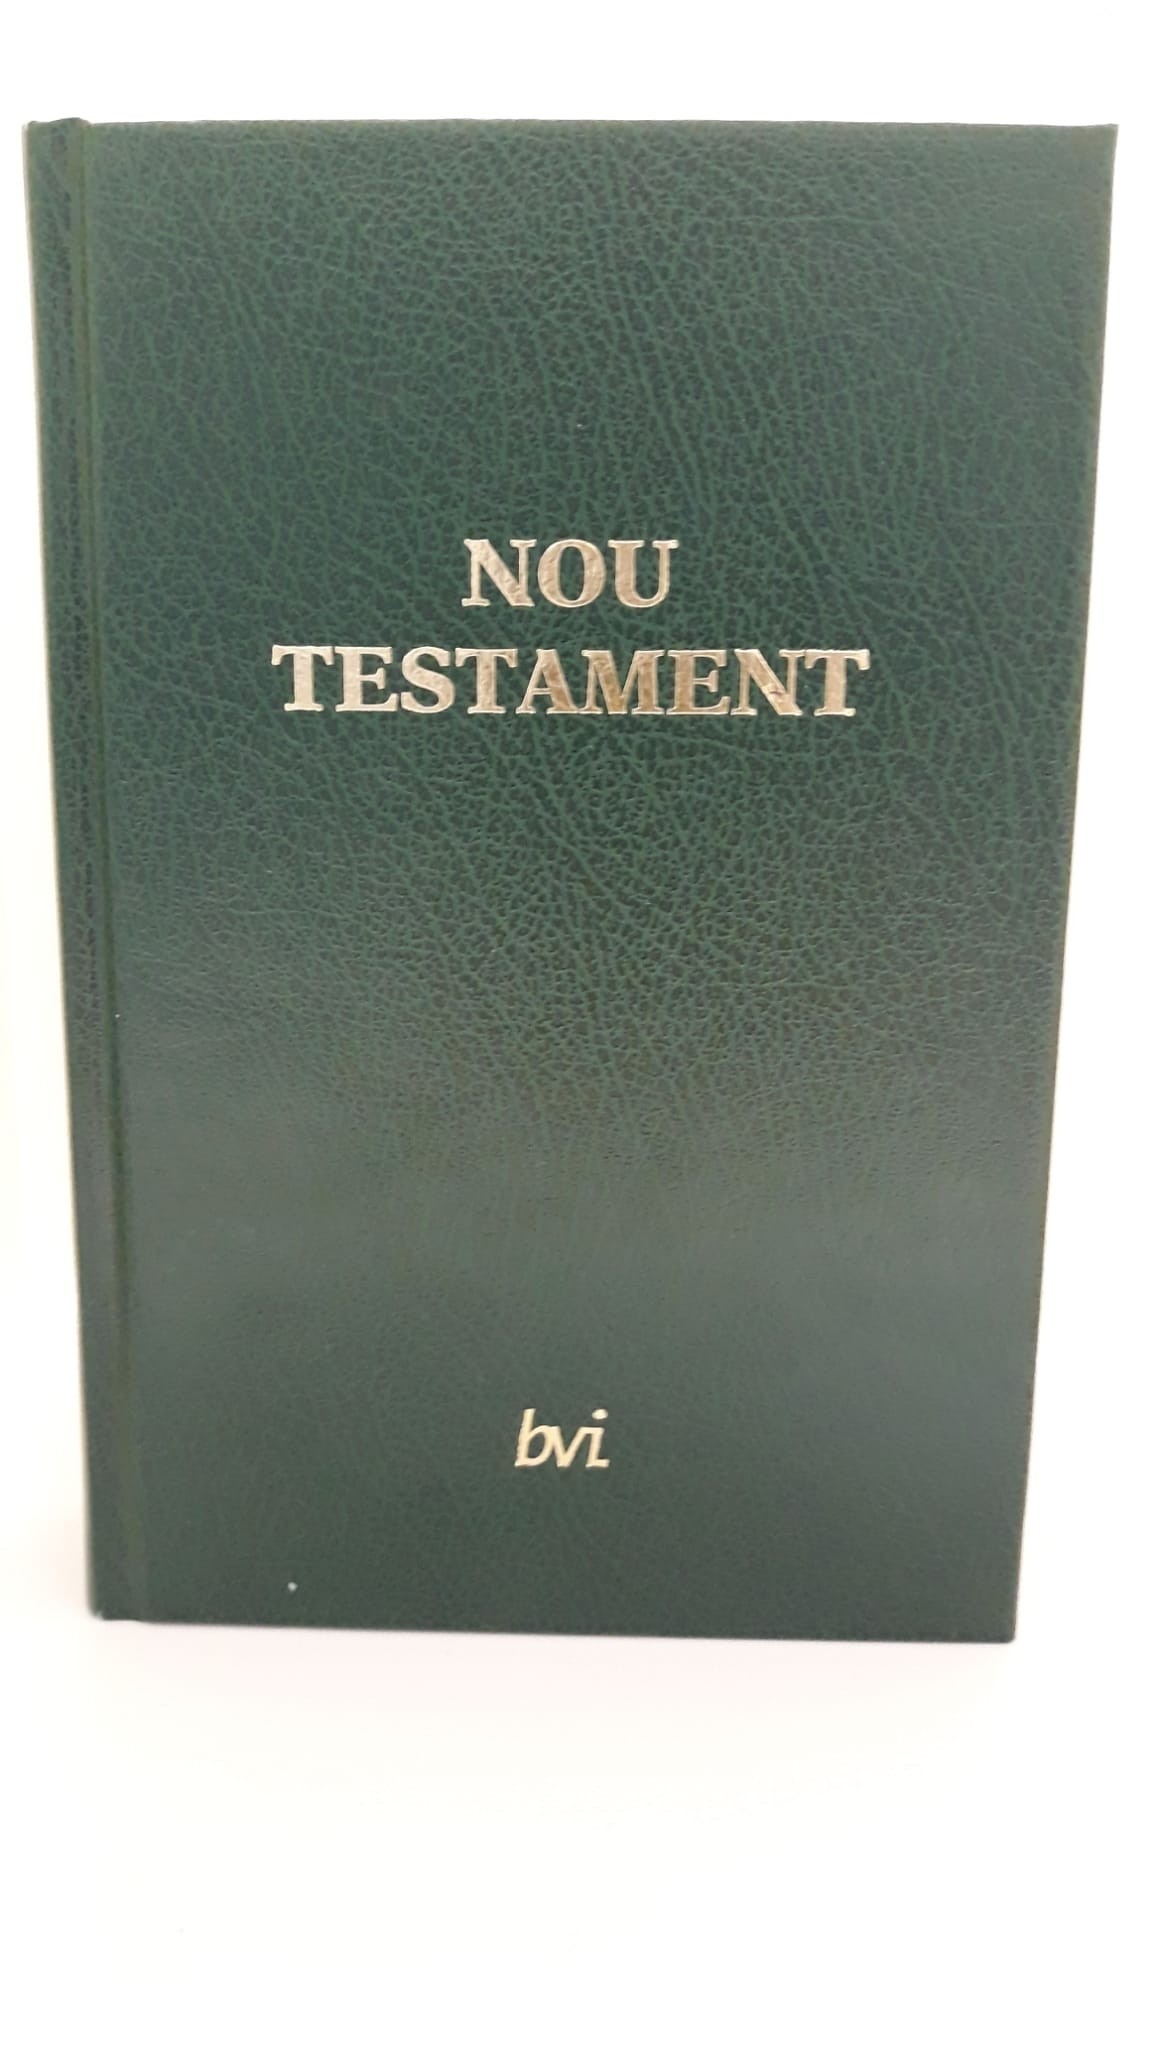 Nuevo Testamento en valenciano.